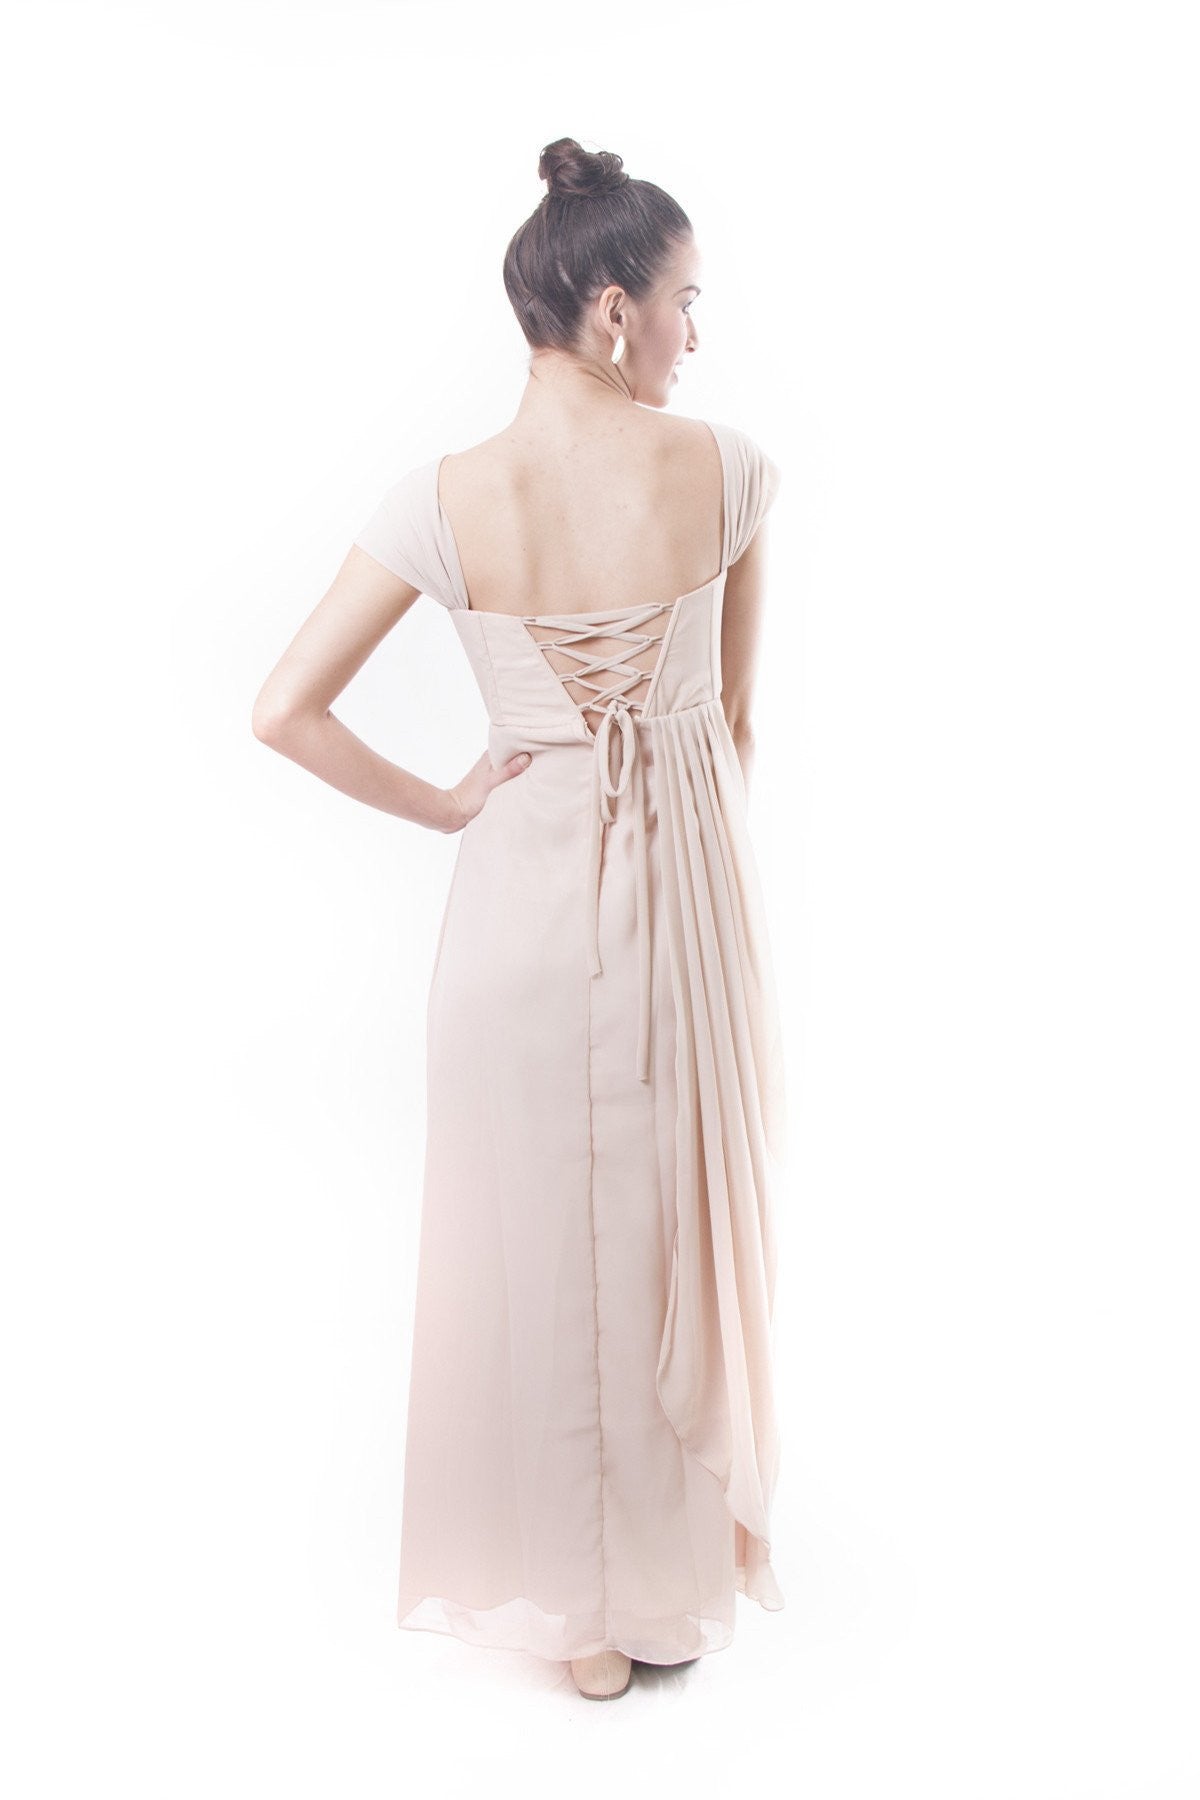 BARONG WAREHOUSE - WD05 Filipiniana Layered Chiffon Gown Dress